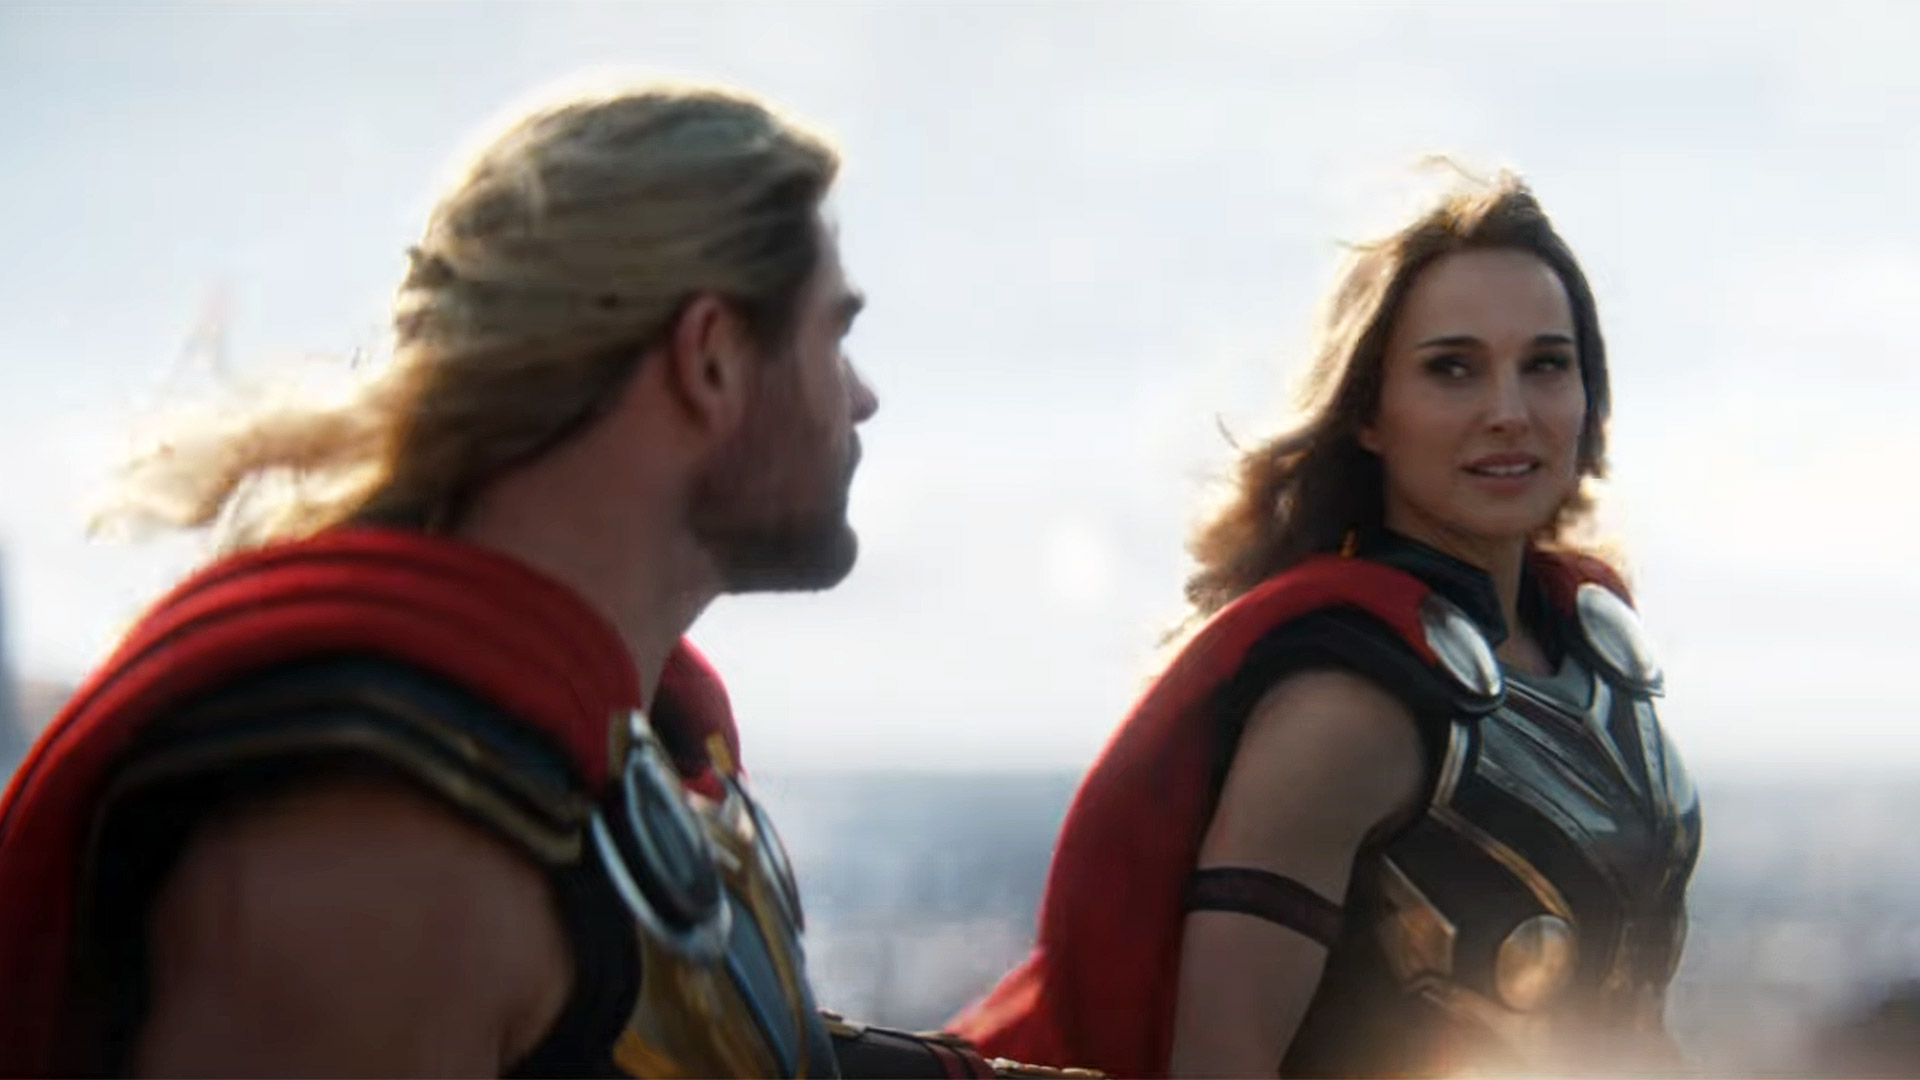 New Thor: Love and Thunder trailer reveals terrifying villain Gorr